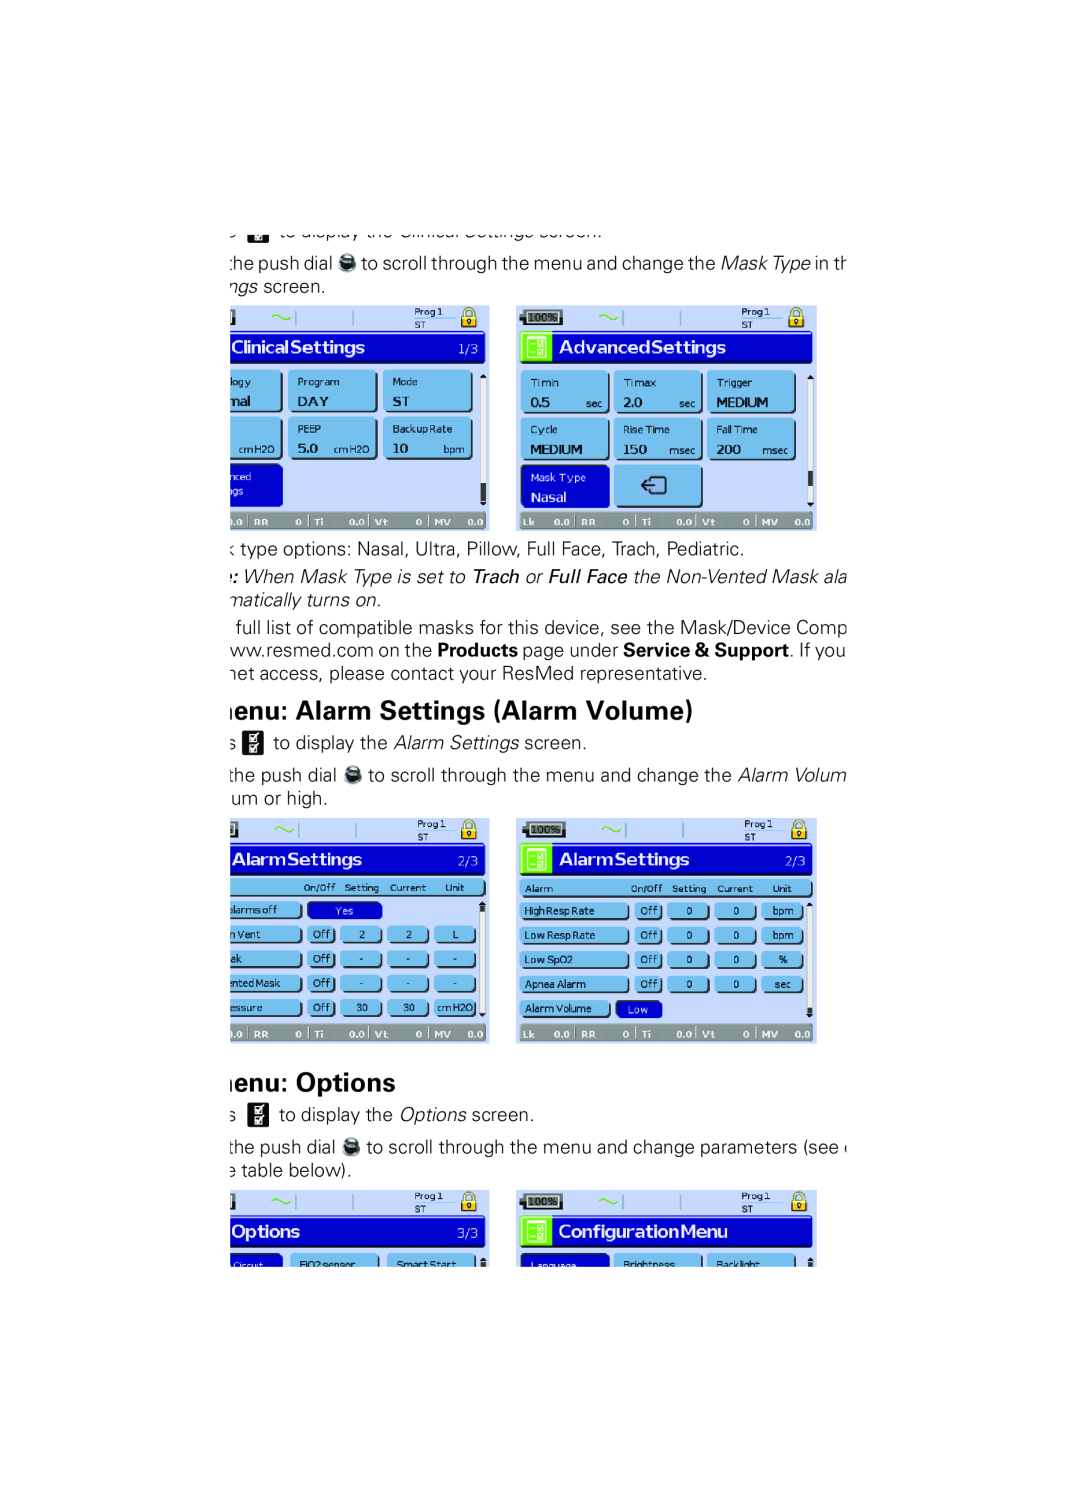 ResMed 2011-09, 248551/1 manual enu Alarm Settings Alarm Volume, enu Options 